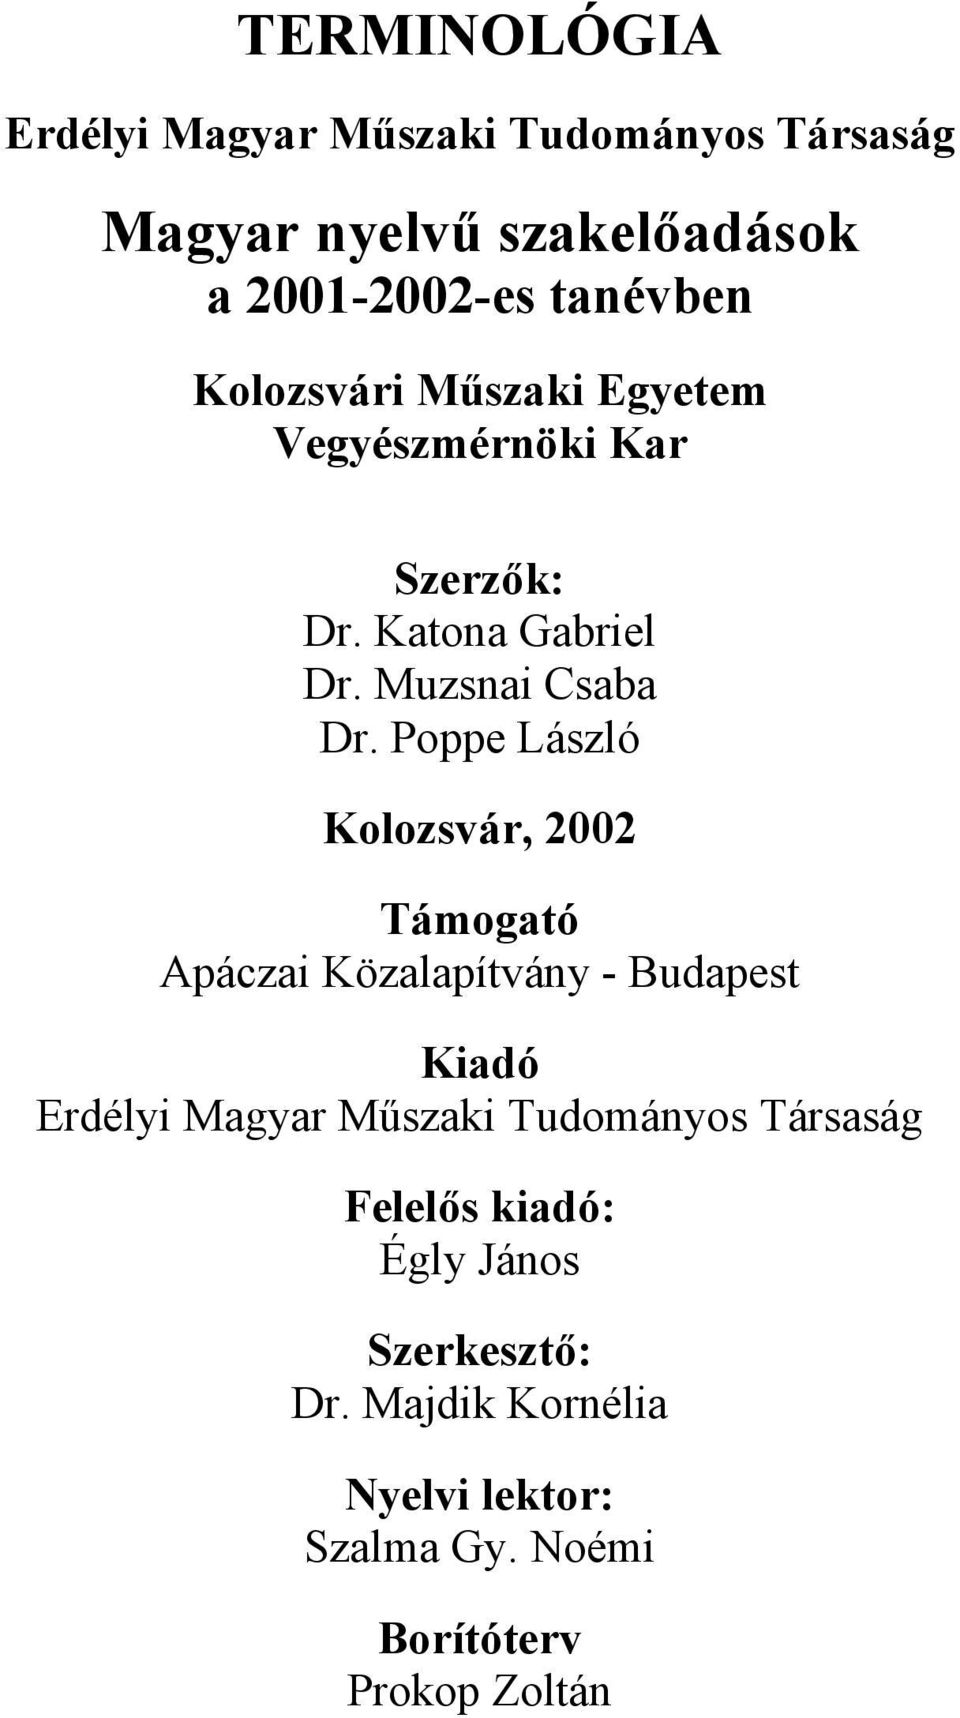 Poppe László Kolozsvár, 2002 Támogató Apáczai Közalapítvány - Budapest Kiadó Erdélyi Magyar Műszaki